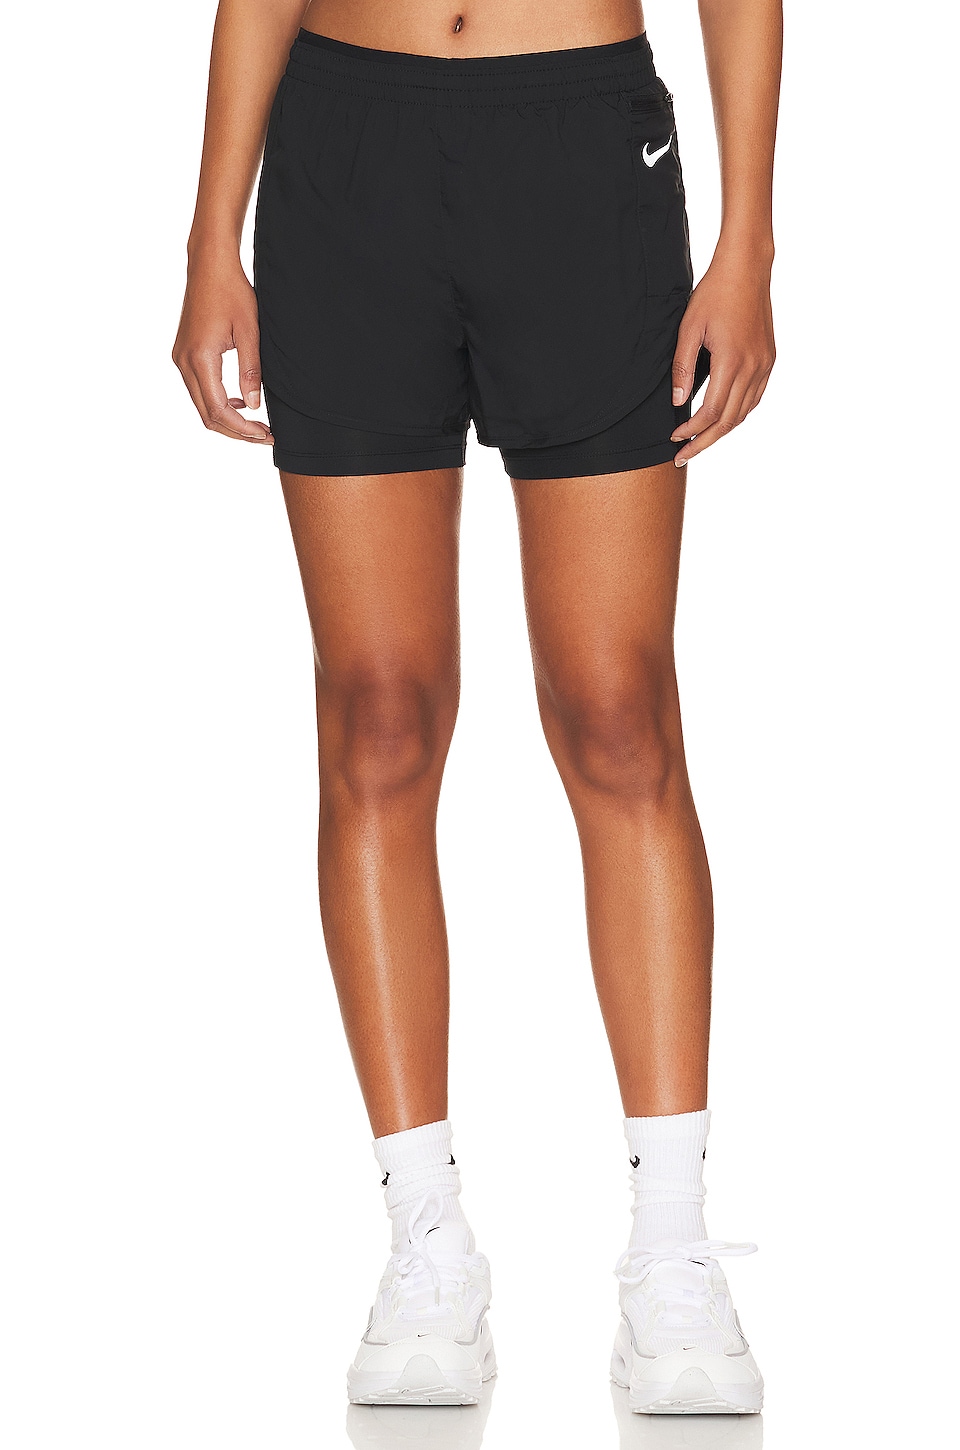 Nike / Women's Luxe 7 Yoga Bike Shorts